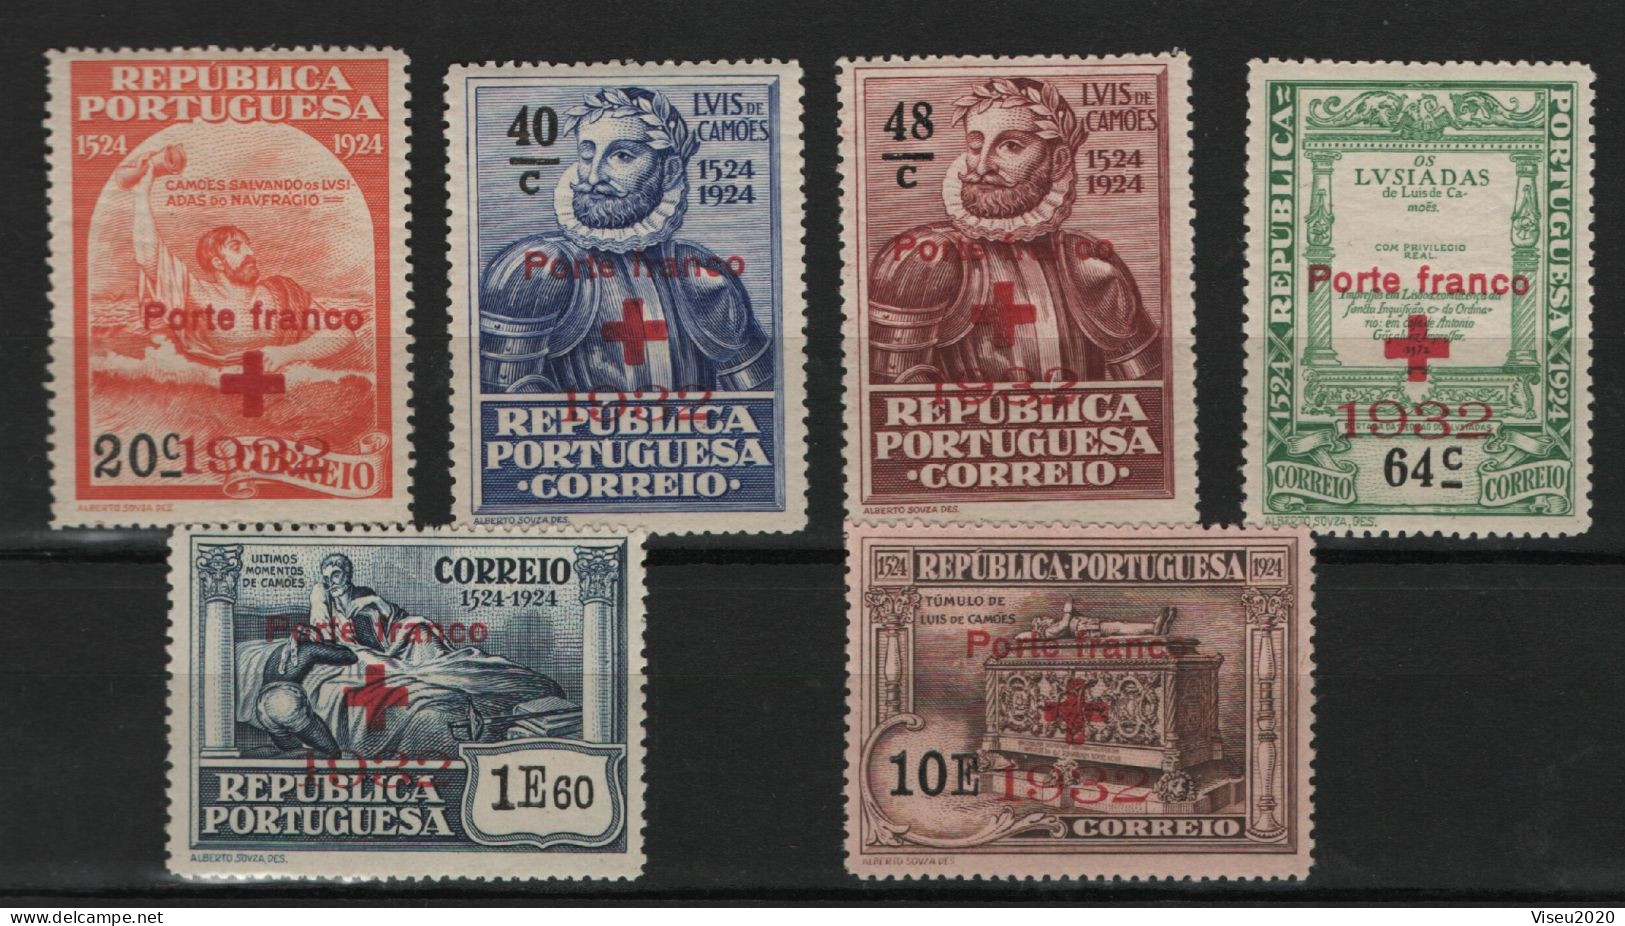 Portugal Porte Franco 1932 - Selos Do 4º Centenário Do Nascimento De Luís De Camões (1924) OVP - Set Completo - Ongebruikt